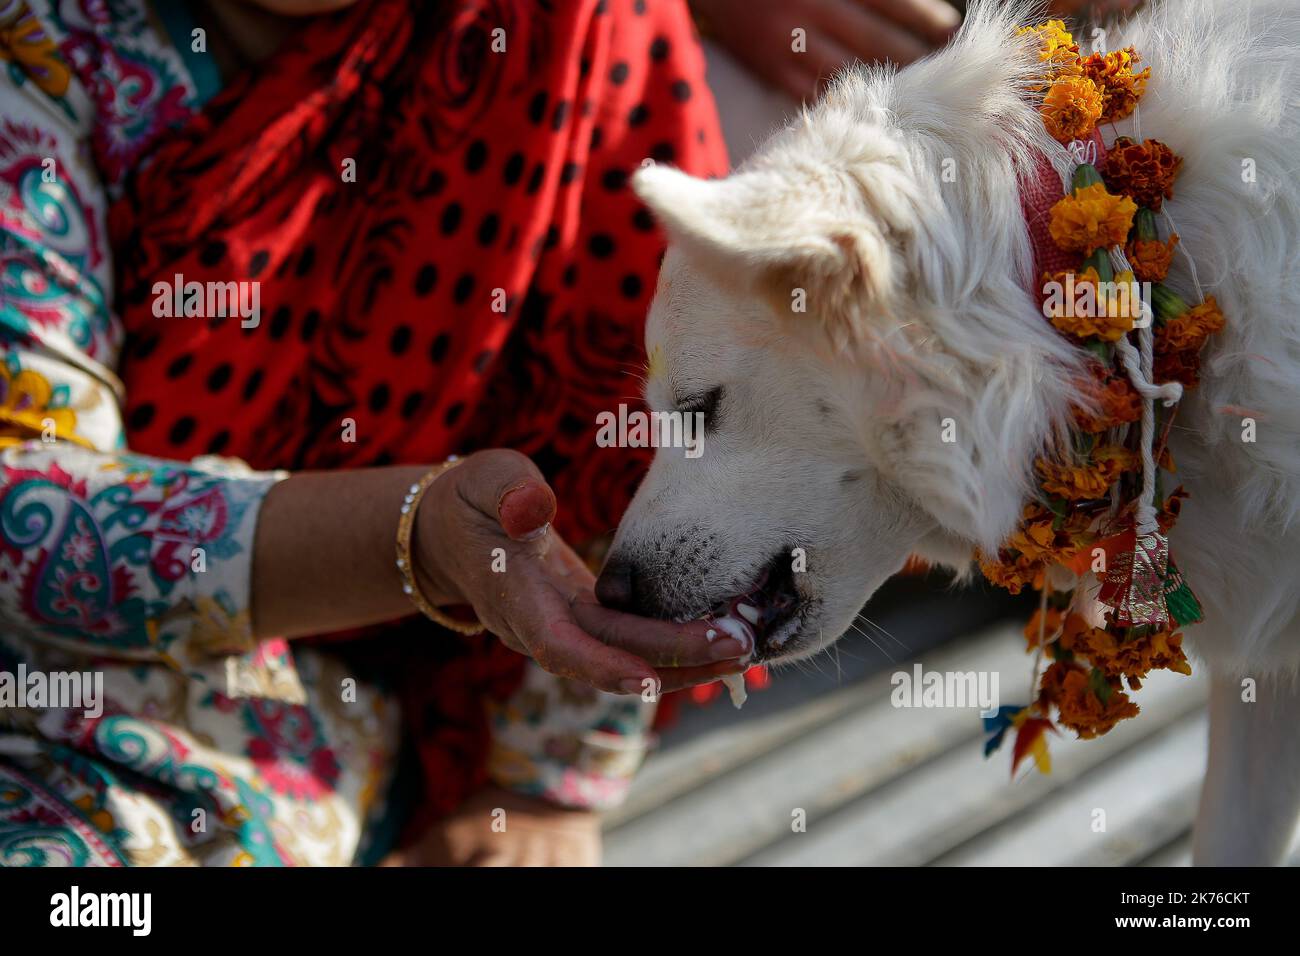 Eine nepalesische Frau verehrt einen Hund, der Girlande und Zinkpulver anwendet, und bietet während des KUKUR TIHAR- oder Hundegottestages in Kathmandu, Nepal, am 6. Oktober 2018, Nahrung an. Hunde werden verehrt, um ihre Rolle bei der Bereitstellung von Sicherheit und als Mensch bester Freund anzuerkennen, am zweiten Tag der wichtigsten hinduistischen Feste Tihar, die auch der Anbetung der Göttin des Reichtums Laxmi gewidmet ist. Stockfoto